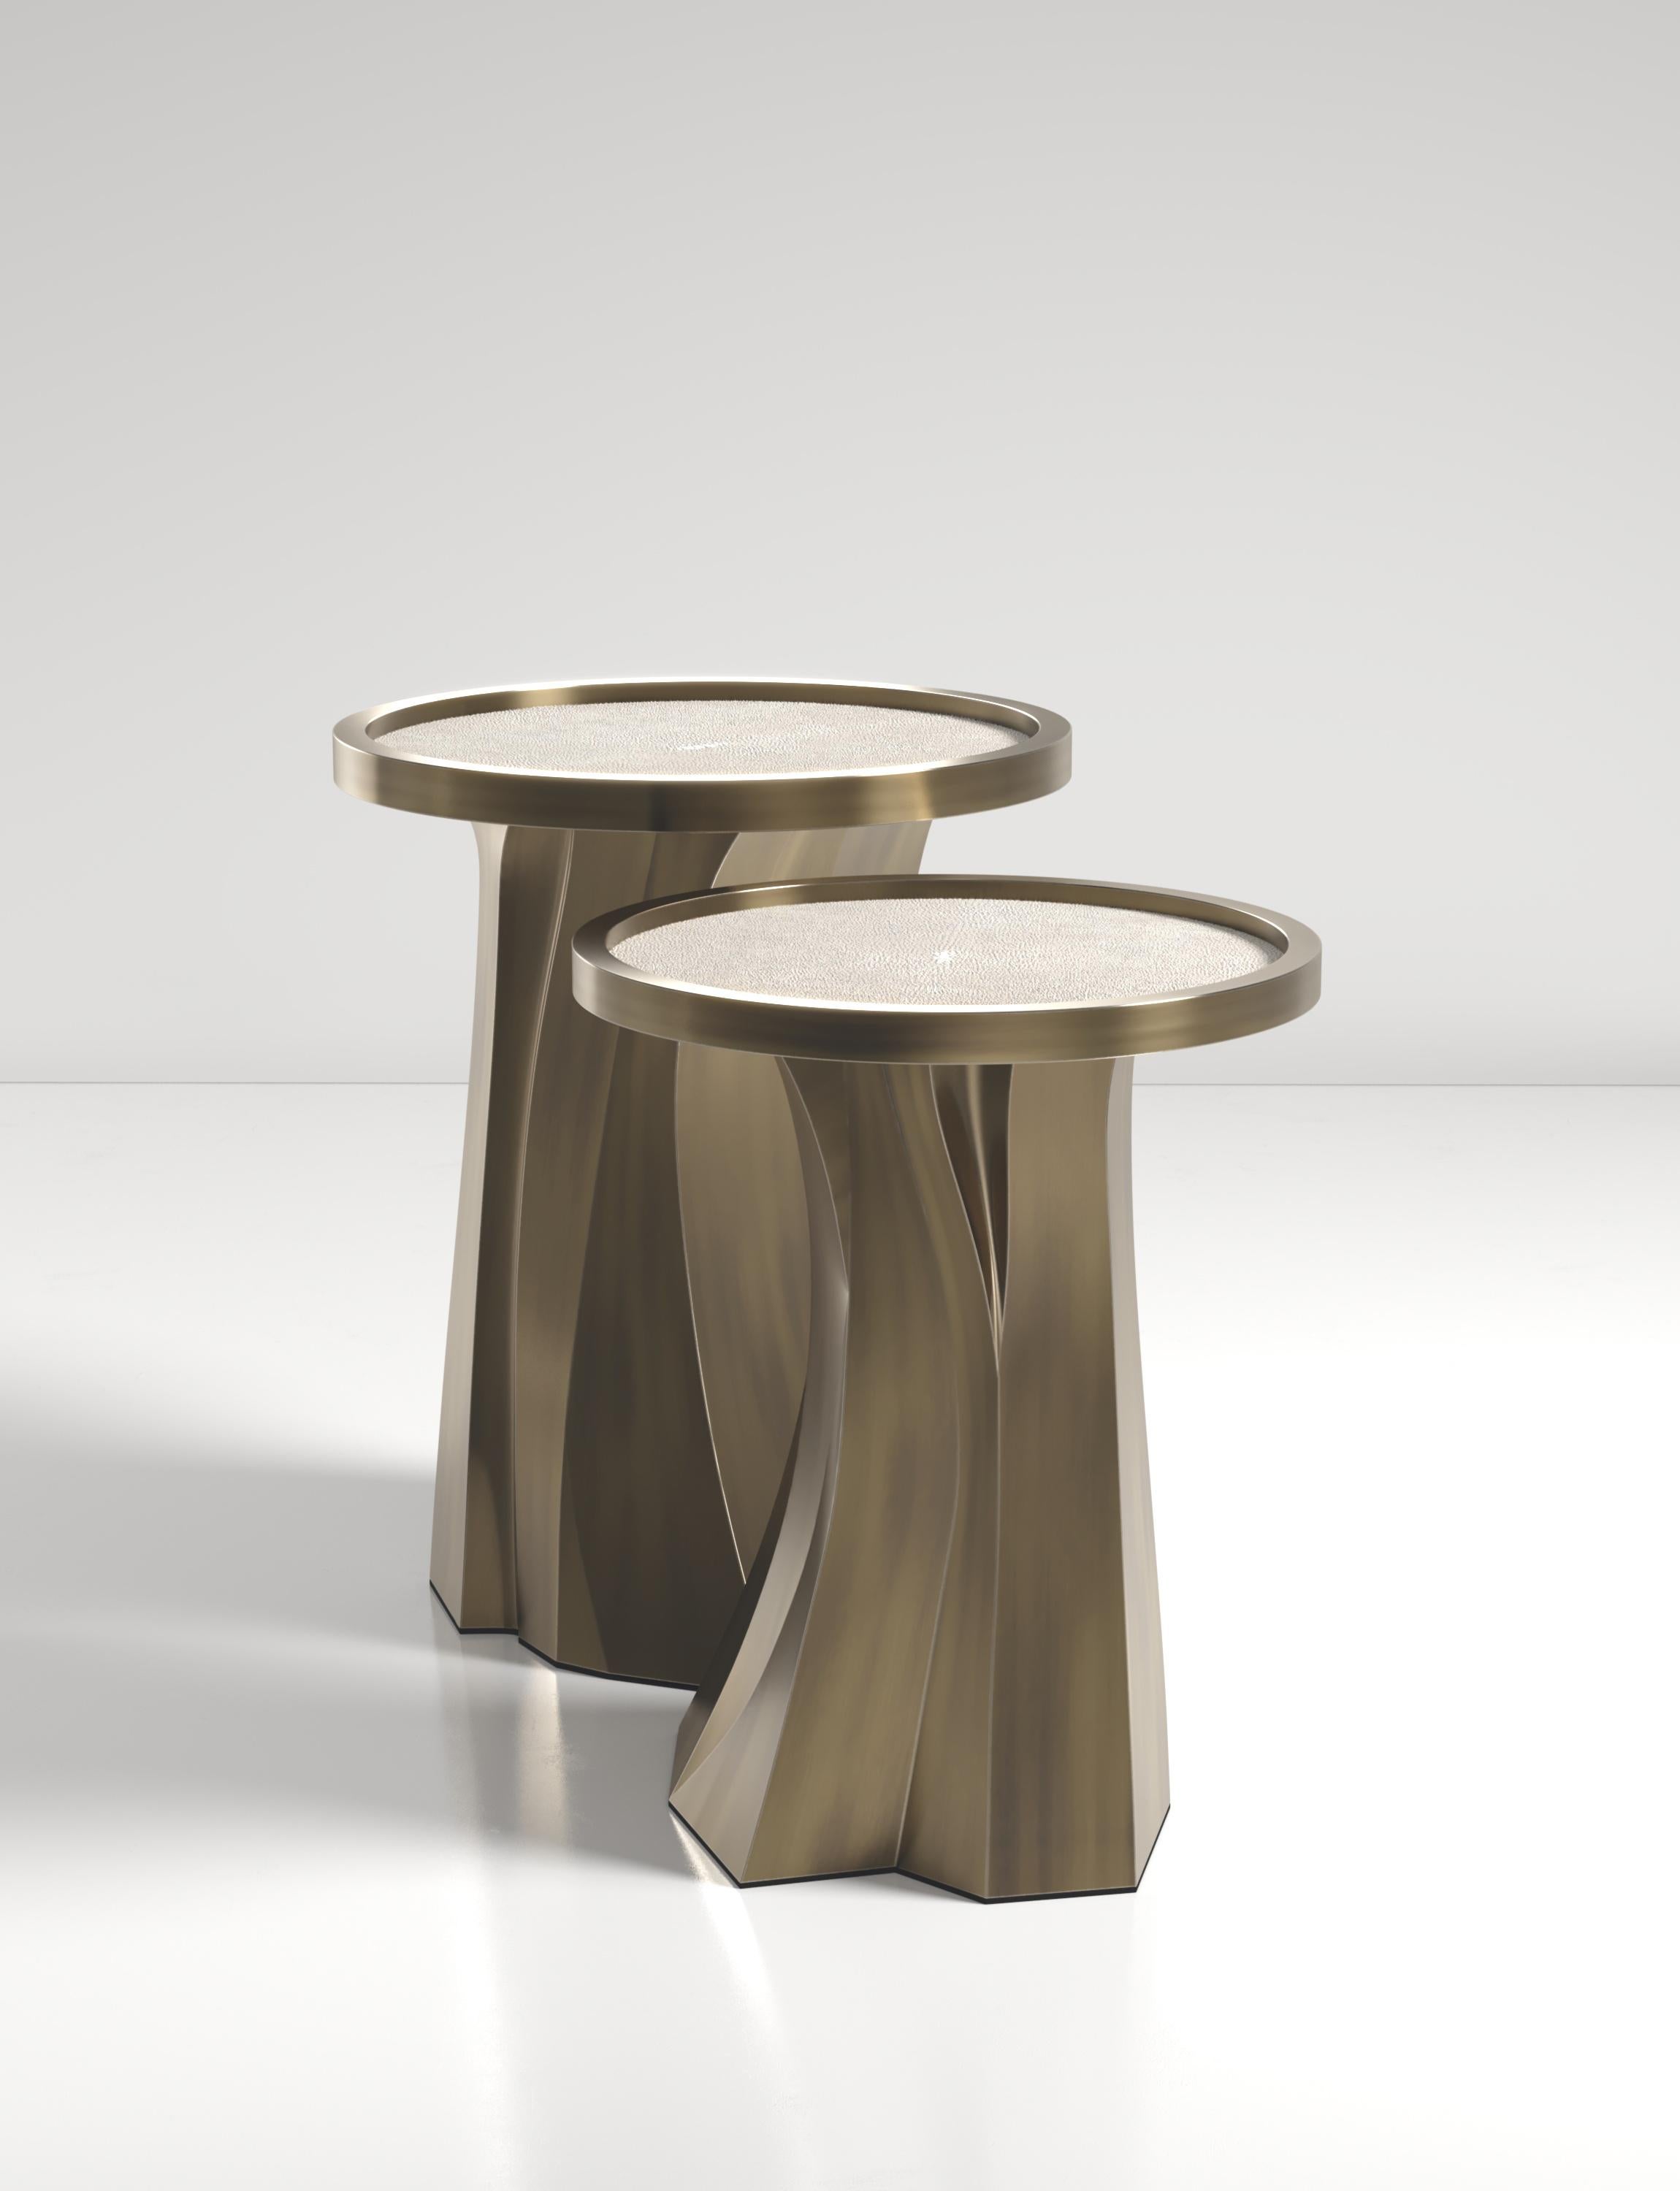 Les tables gigognes Alma de R&Y Augousti sont des pièces sculpturales et polyvalentes. Le plateau incrusté de galuchat crème se transforme en un spectaculaire socle en patine de bronze sculpté à la main. Les rainures et les détails de la base